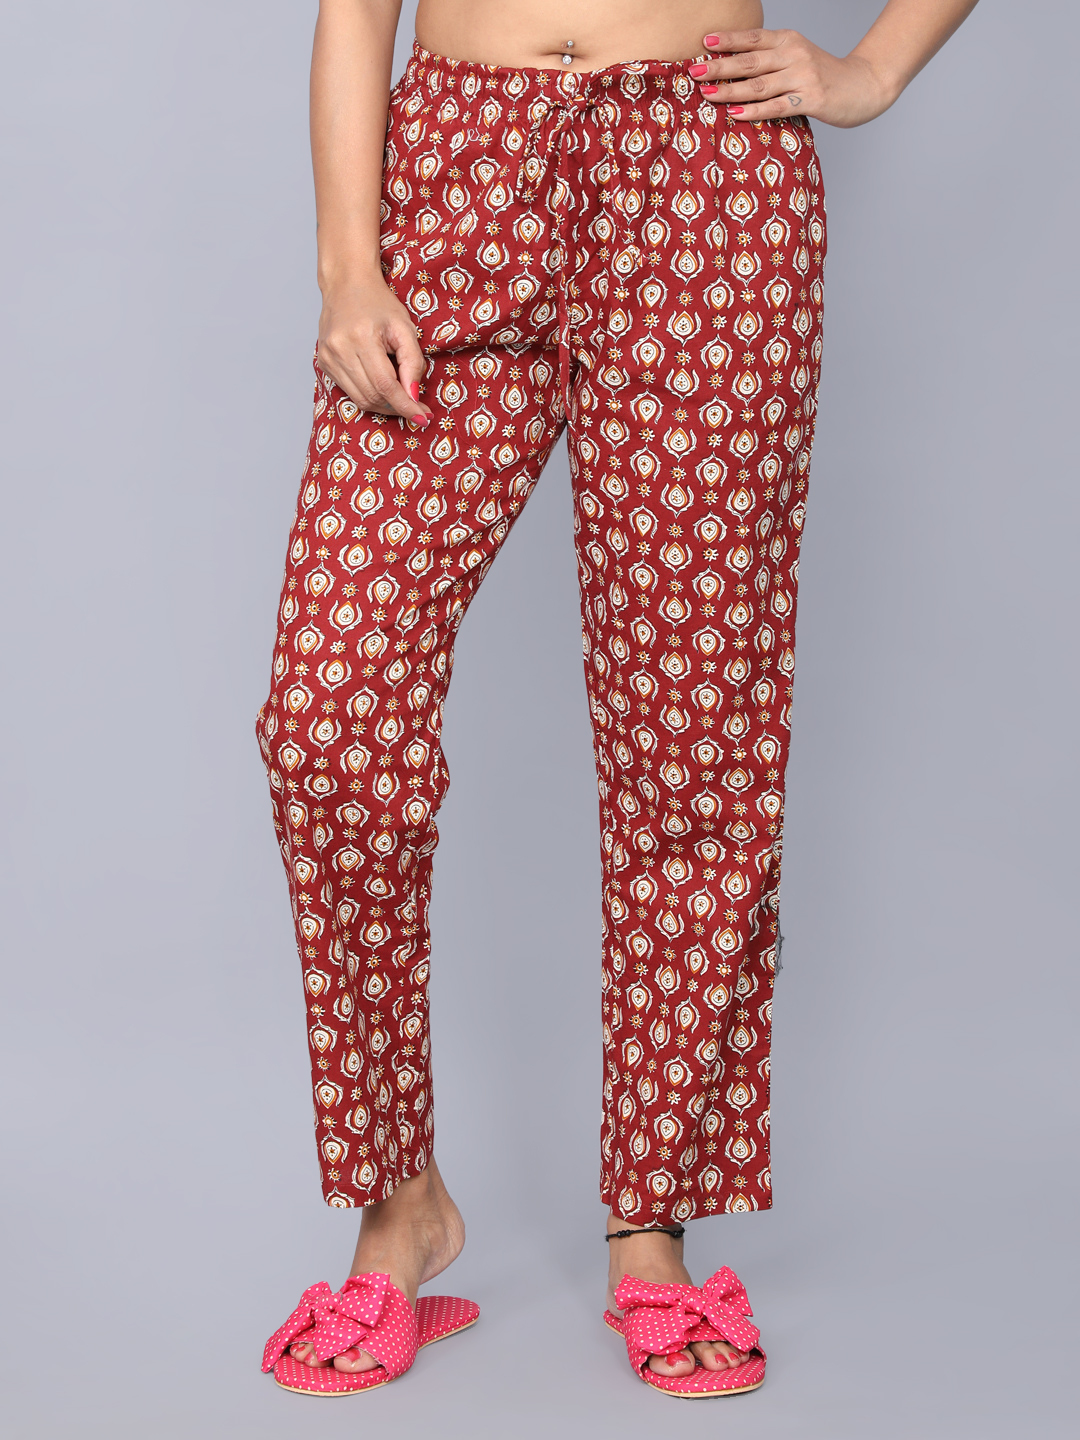 Girls Sleepwear Pajamas